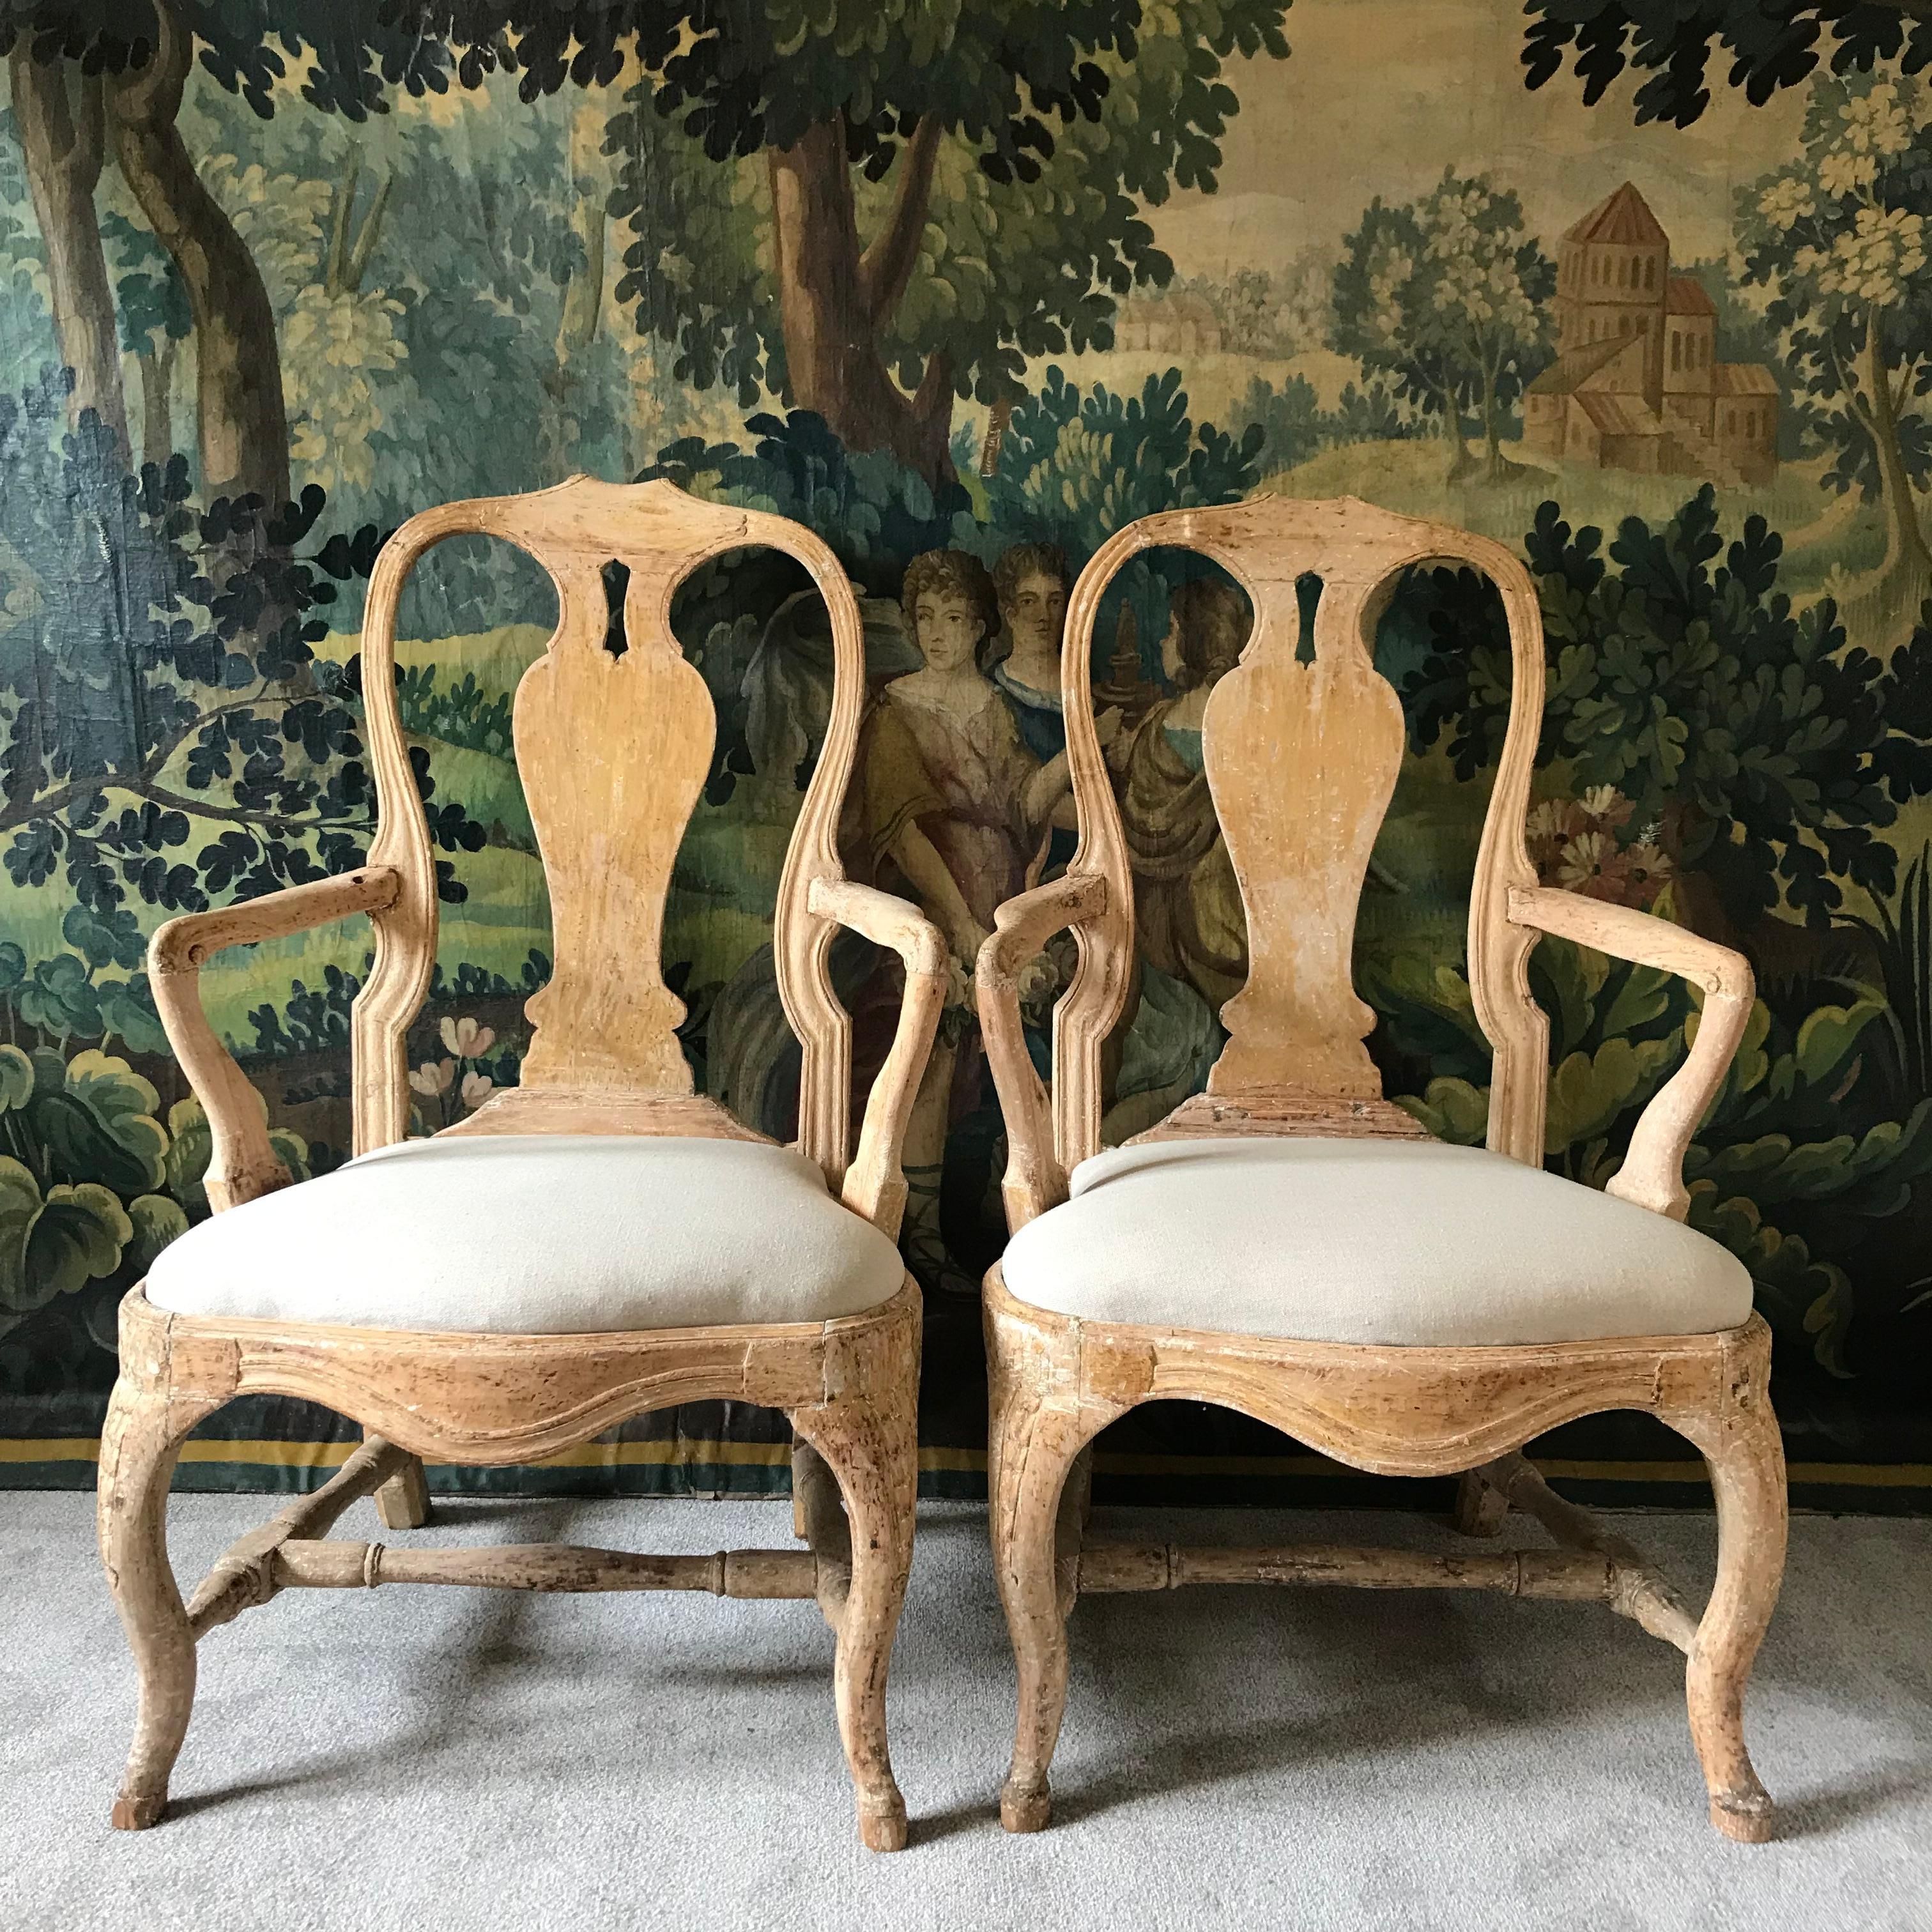 Une superbe paire de fauteuils rococo de la période suédoise du 18ème siècle dans leur peinture d'origine (non retouchée ou repeinte) avec des détails sculptés à la main. Ils sont d'une glorieuse couleur jaune ocre. 
Cette paire de chaises est